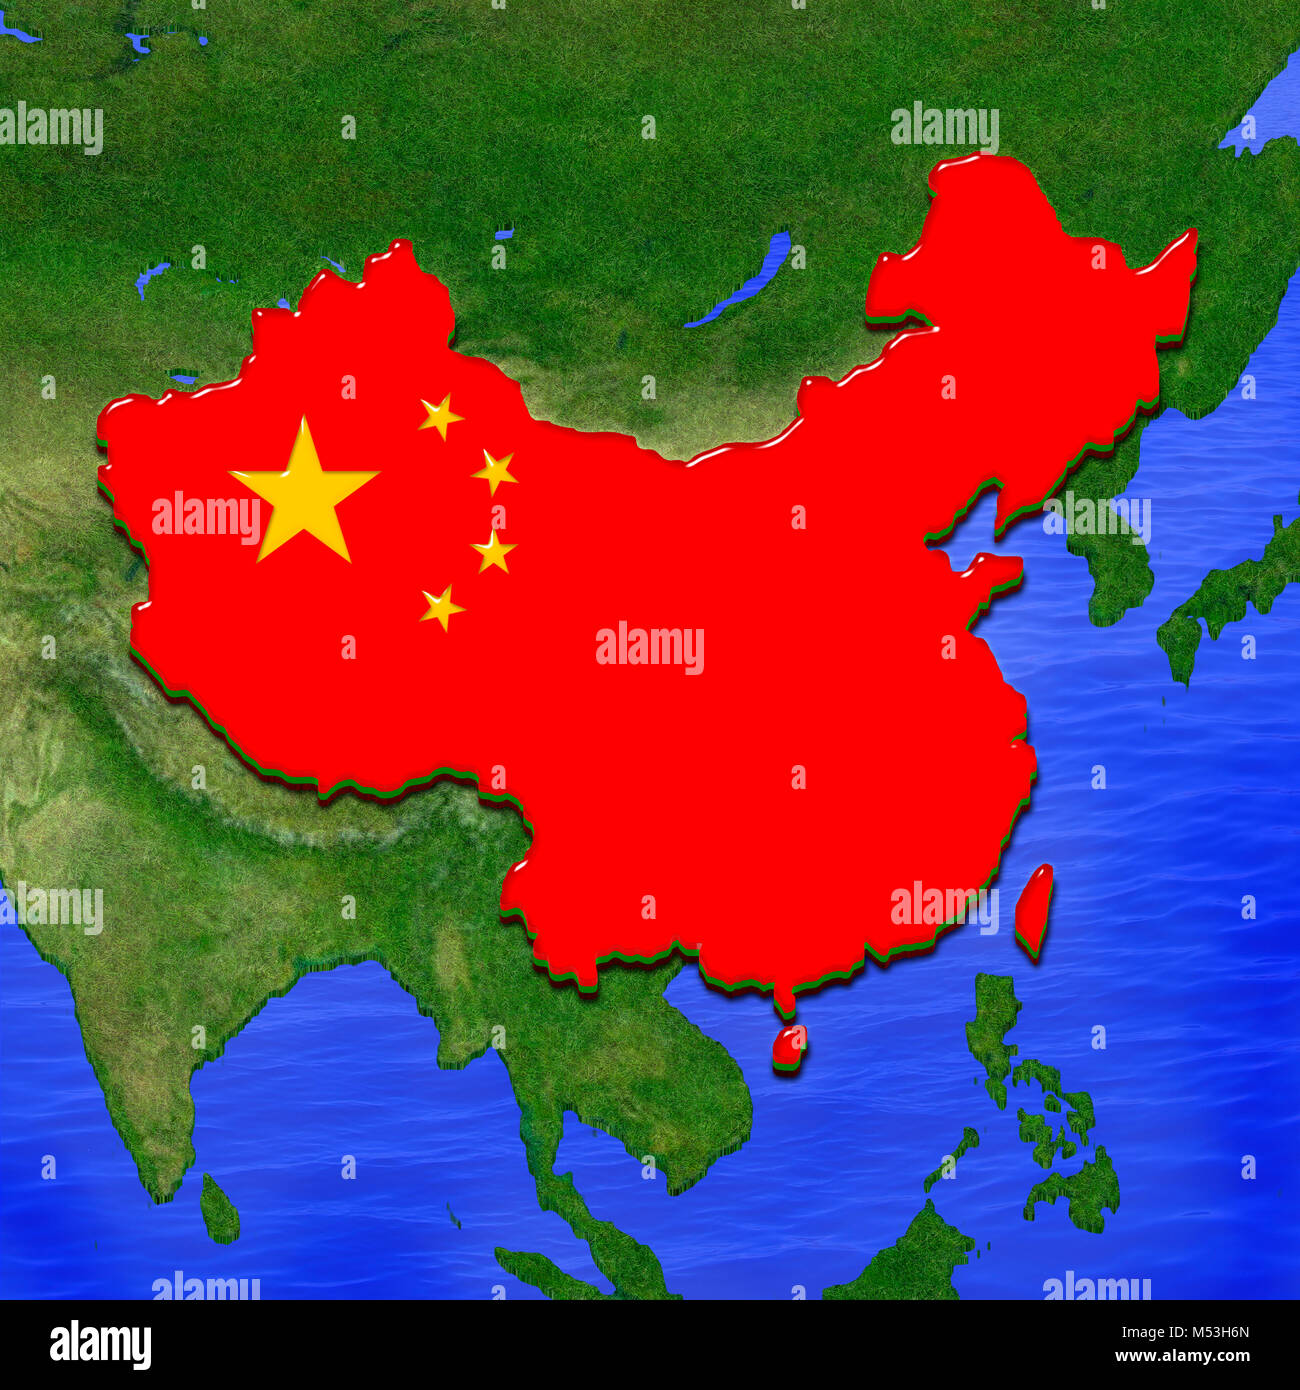 3D de la carte de Chine peint aux couleurs du drapeau chinois, entouré de terre et mer arrière-plan. Illustration de tarte de gelée stylisé Banque D'Images